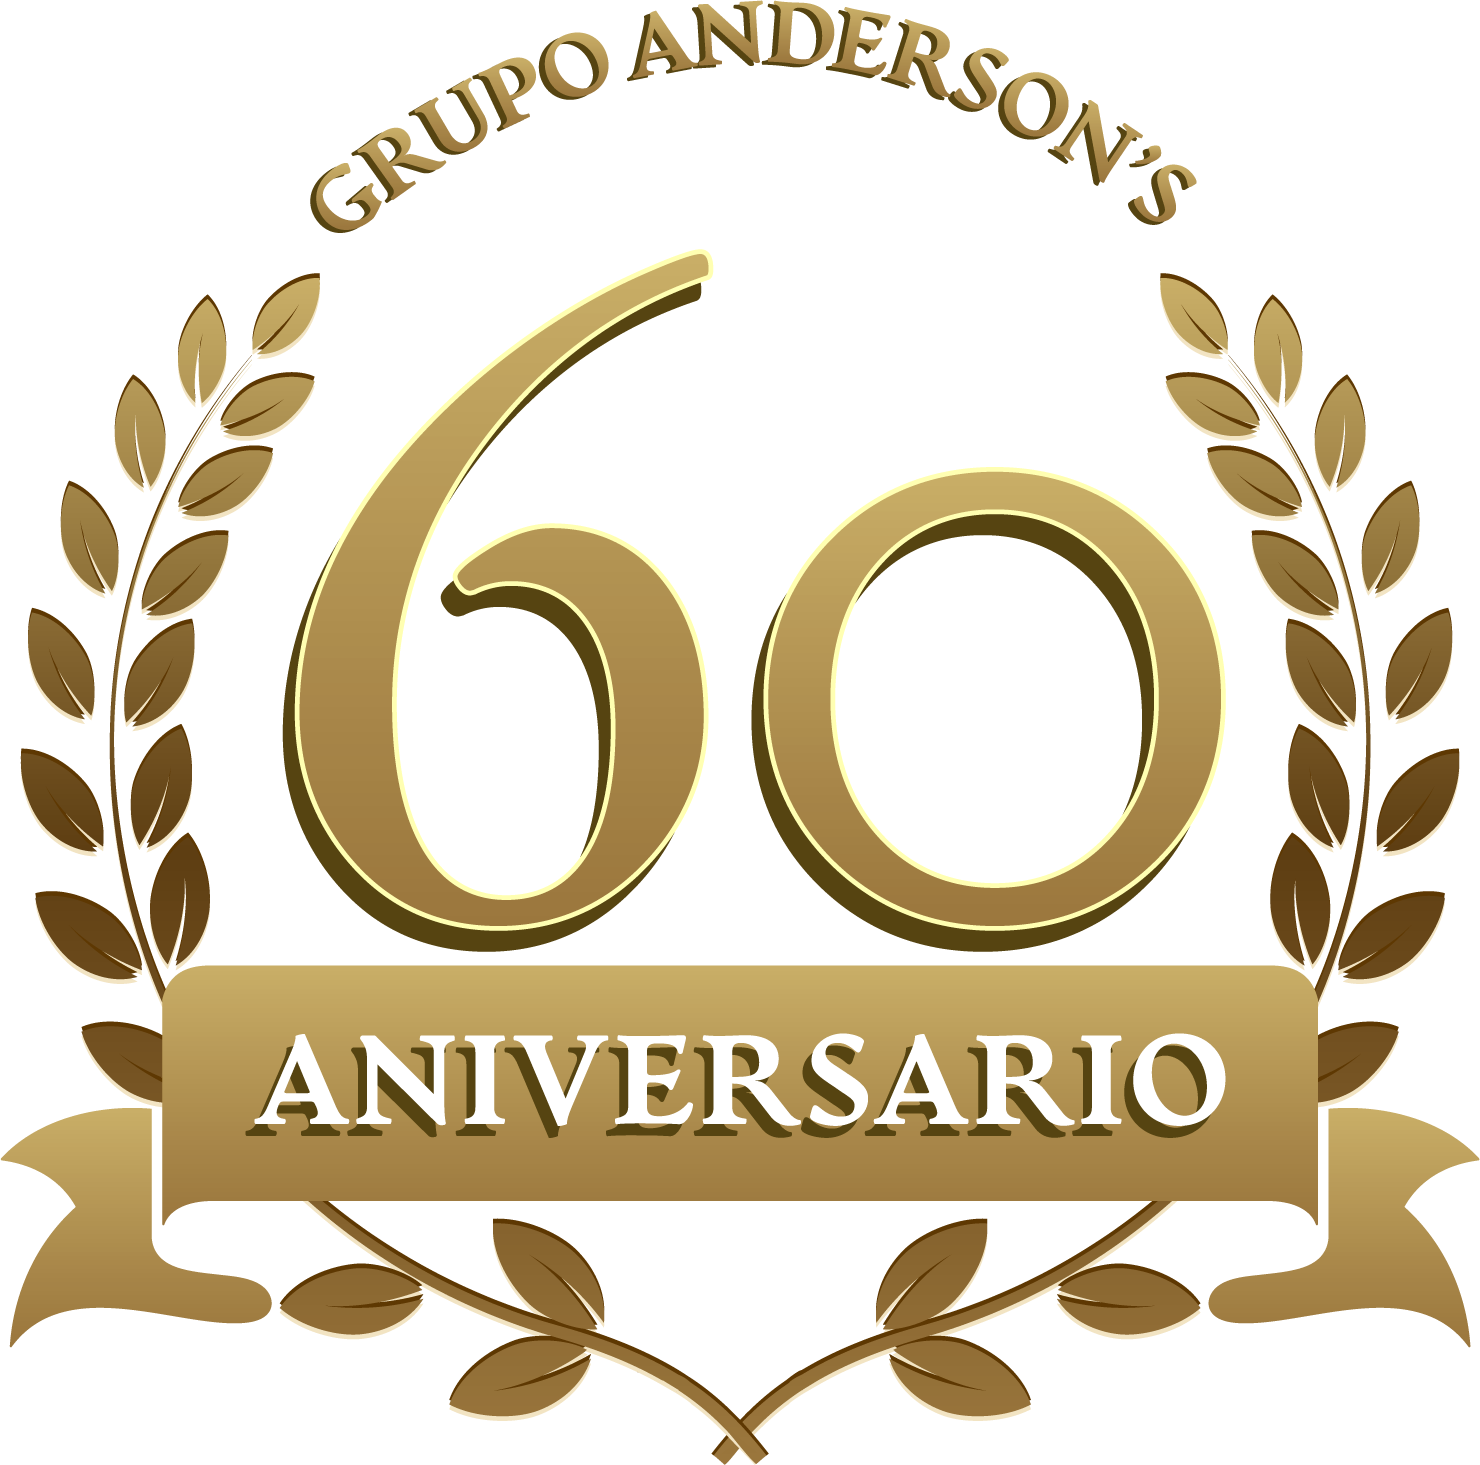 60 aniversario grupo andersons